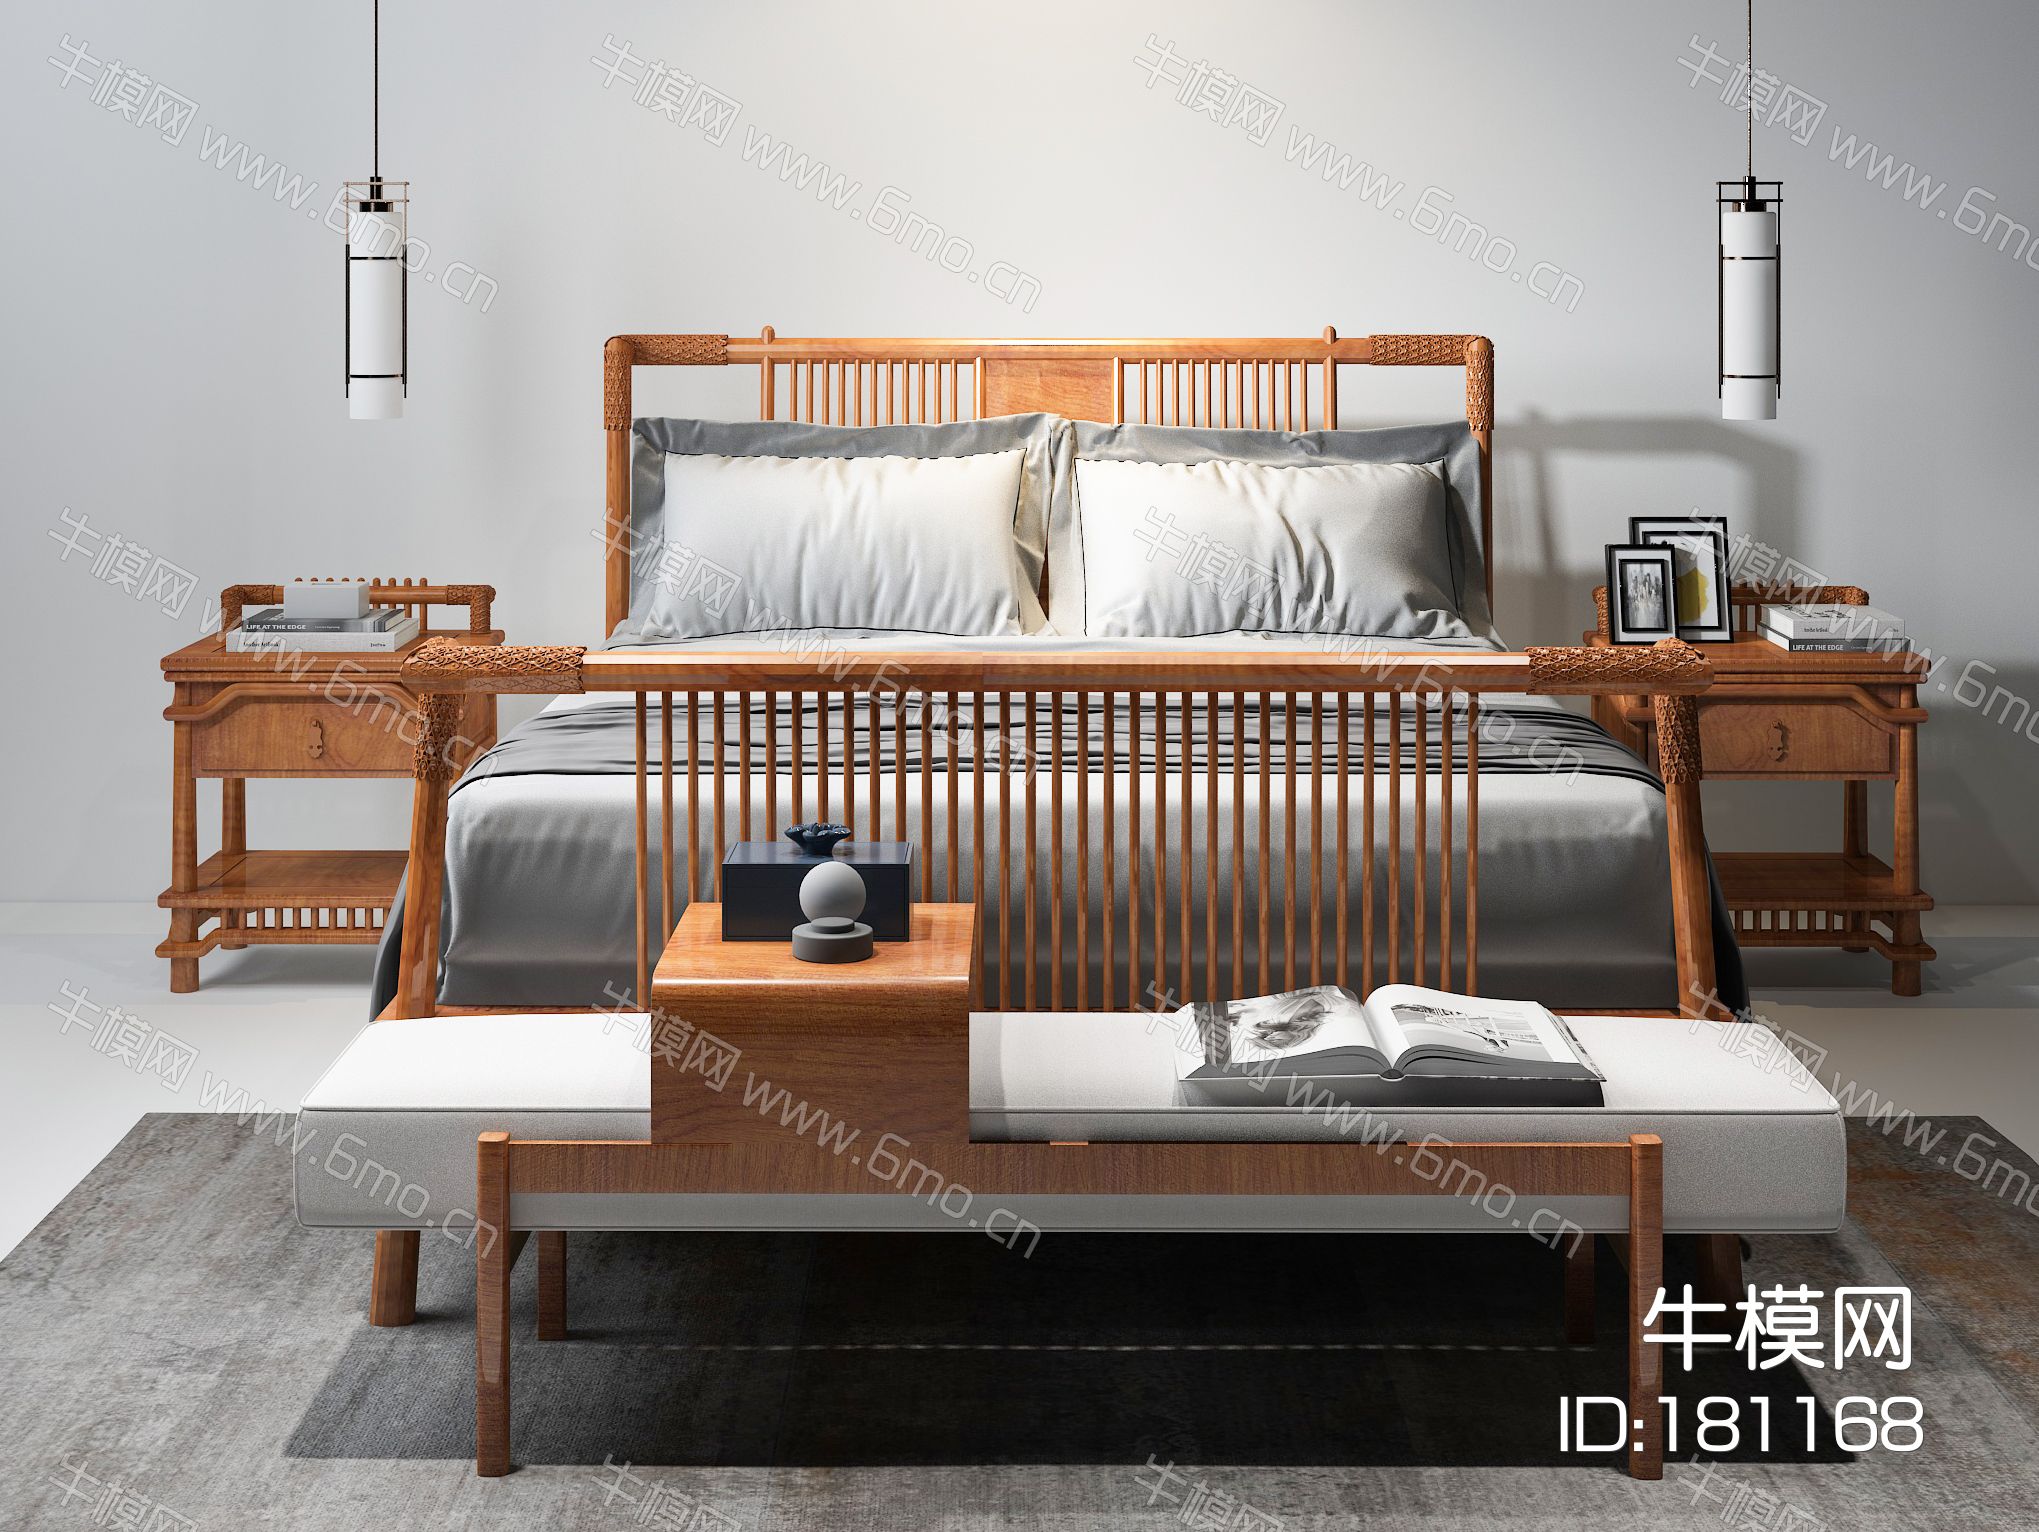 新中式双人床 床头柜 吊灯 床尾凳 抱枕 床品